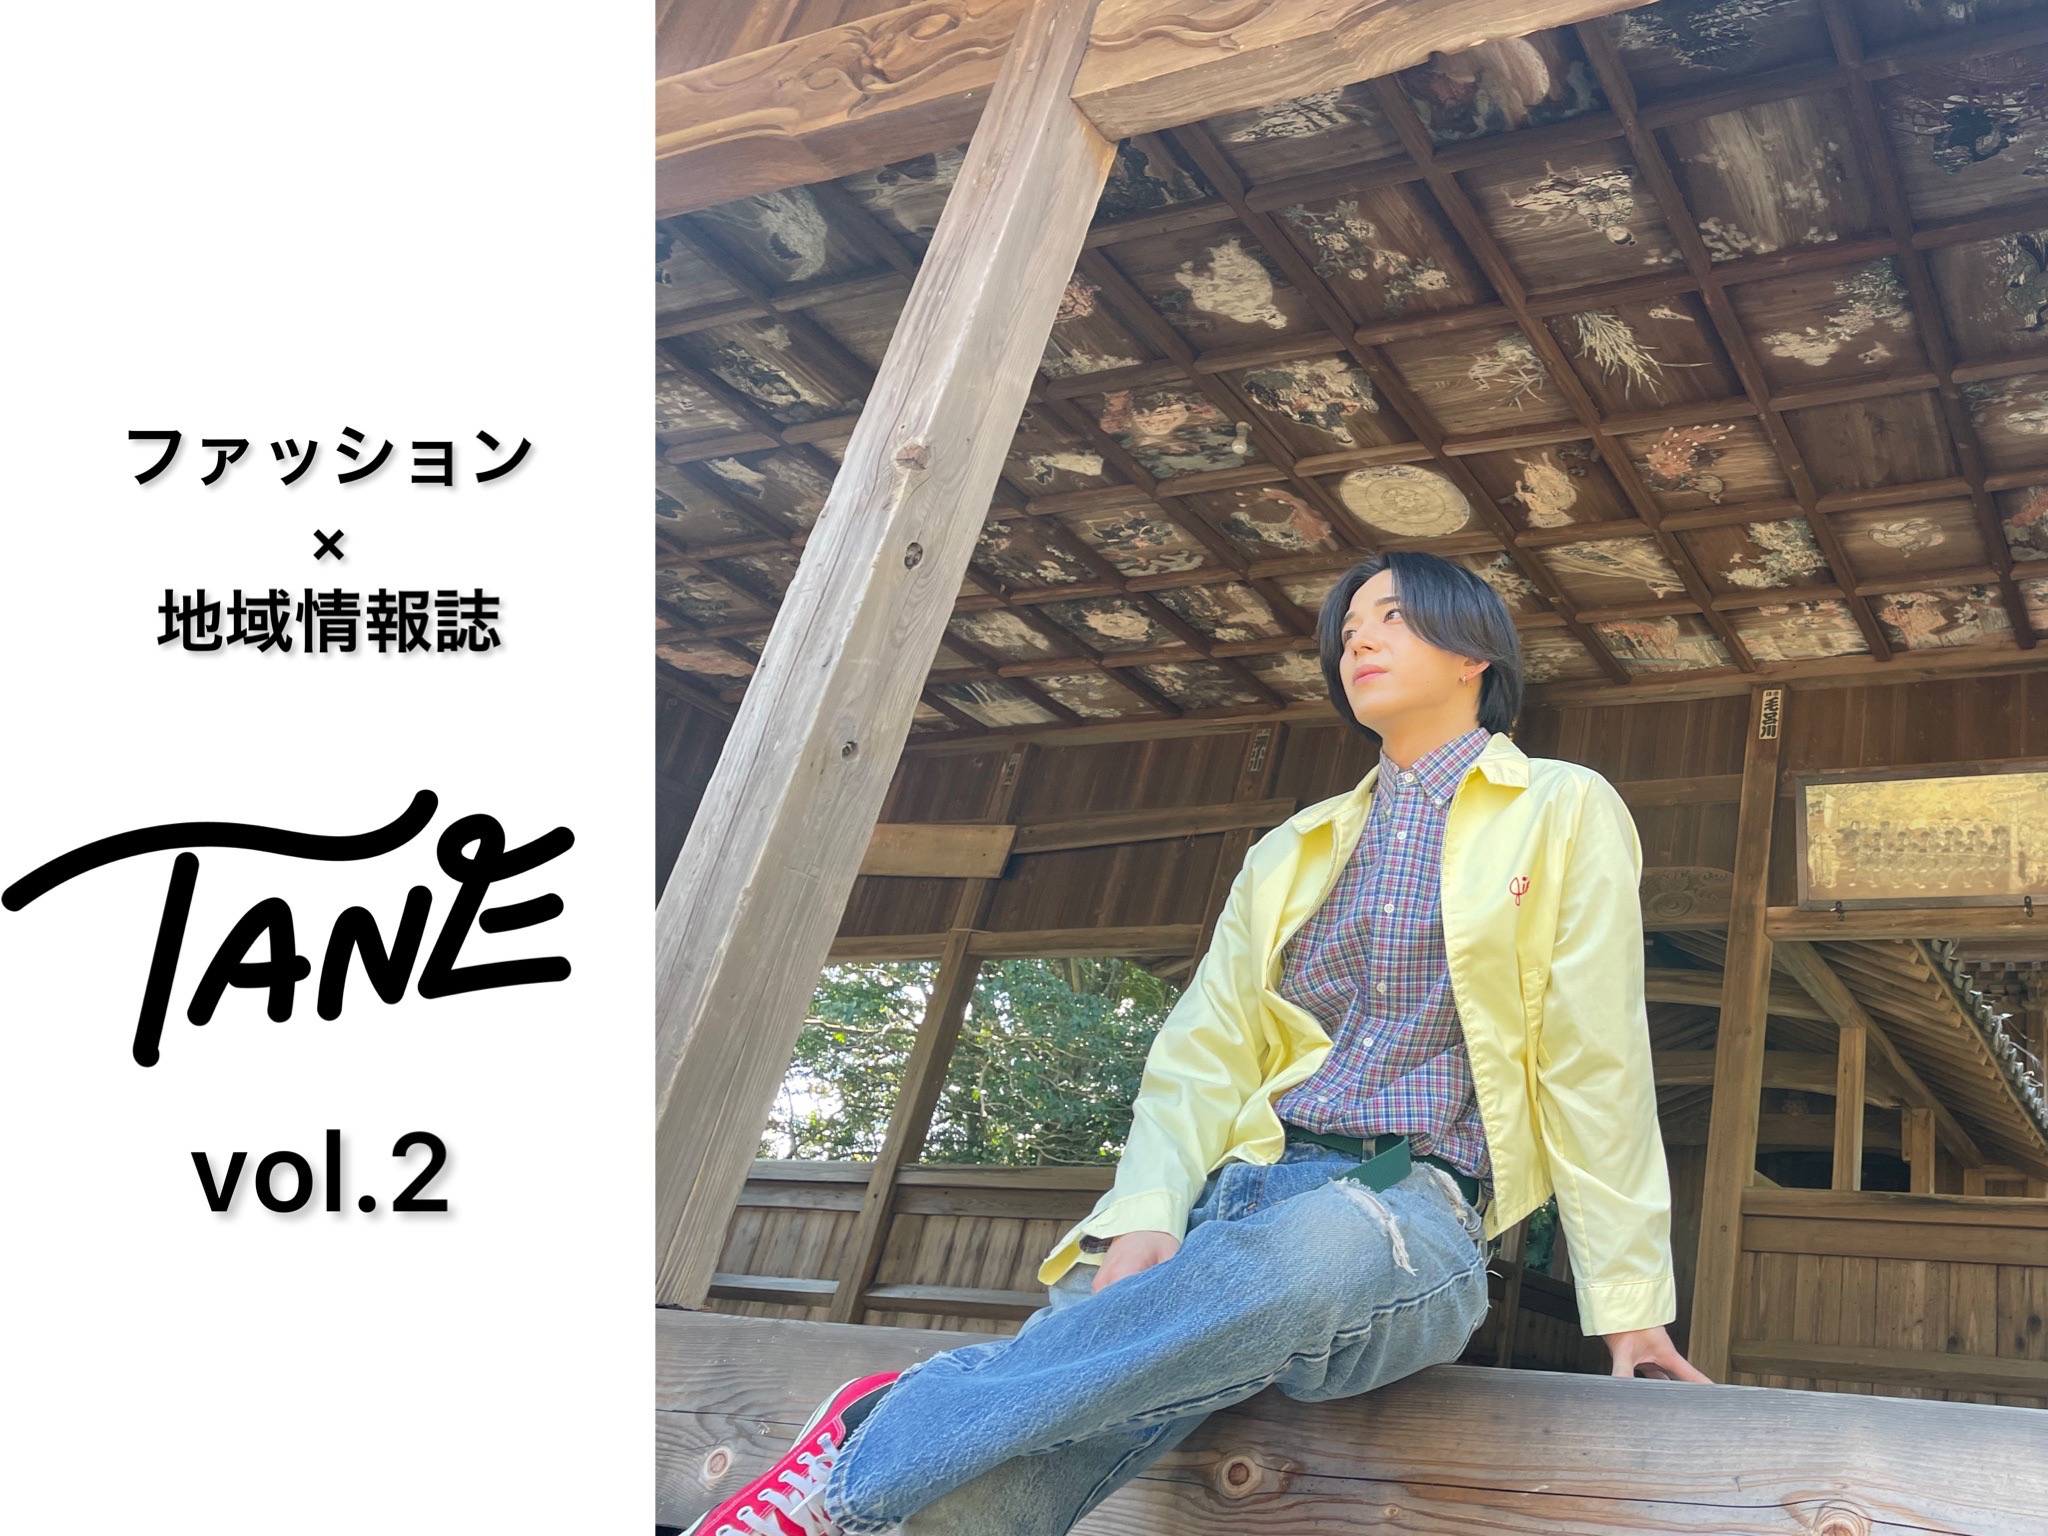 TANEMAKIから「TANE」の第2号が発行